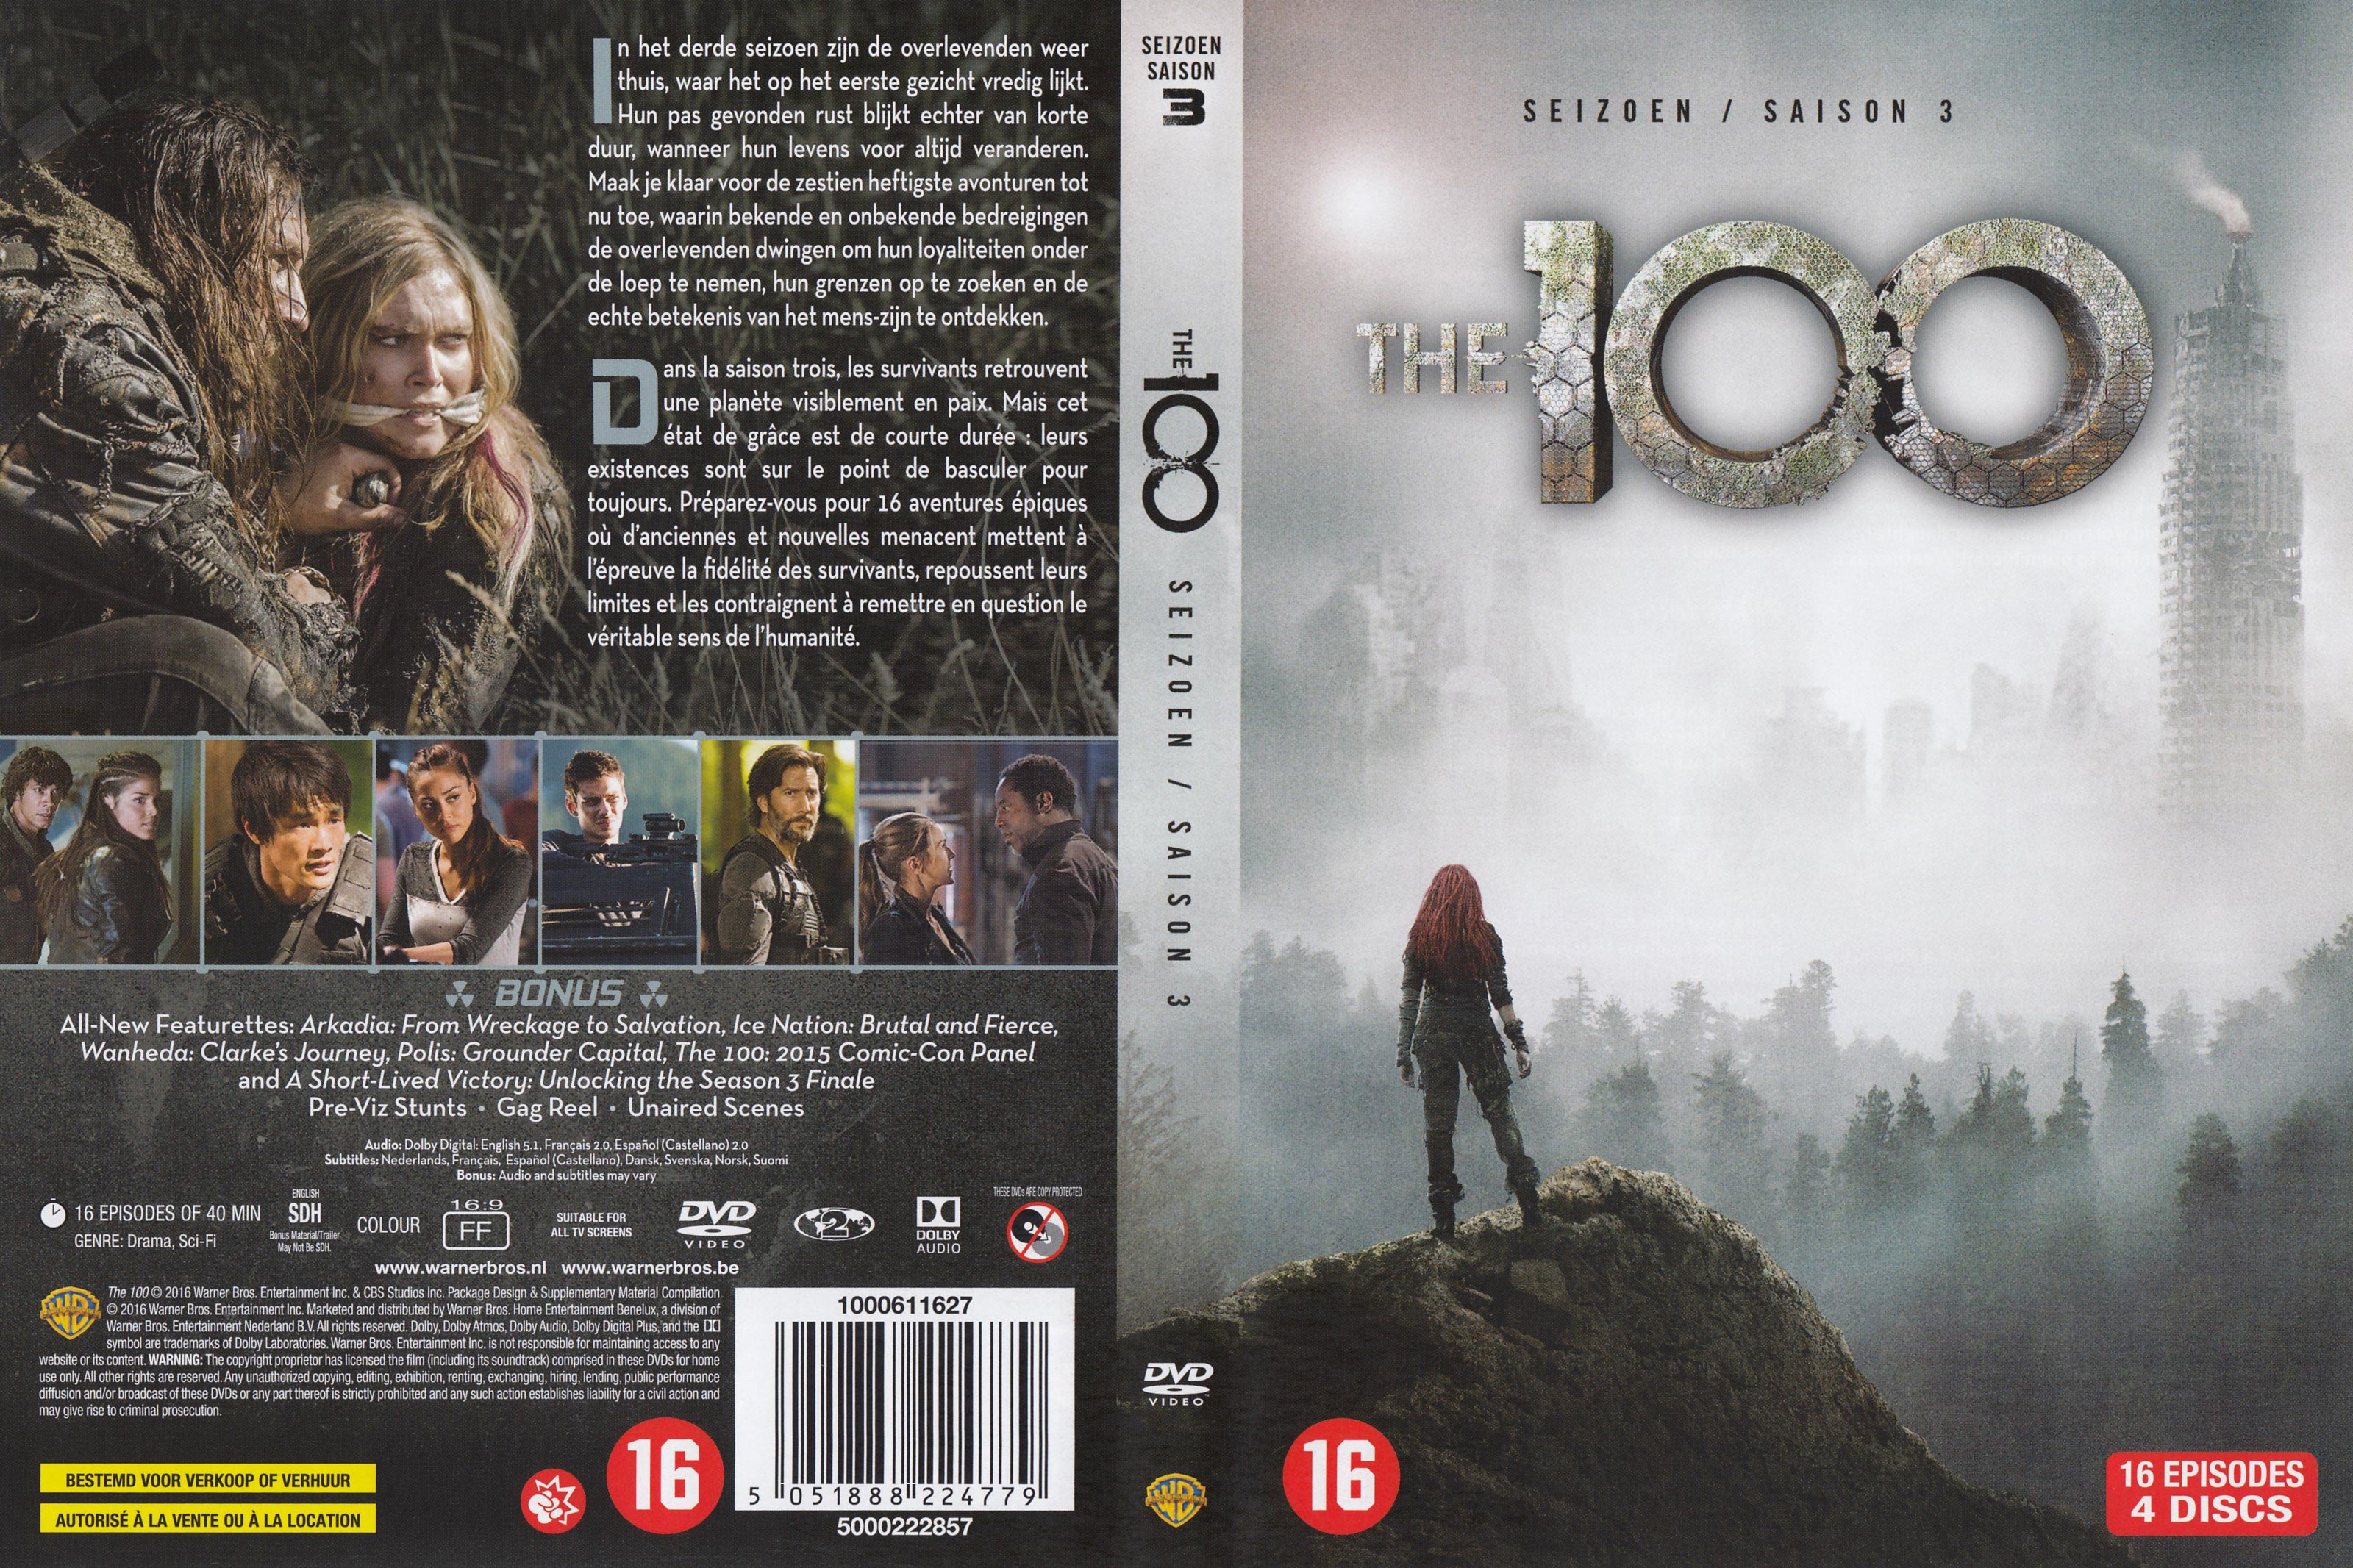 Jaquette DVD The 100 Saison 3